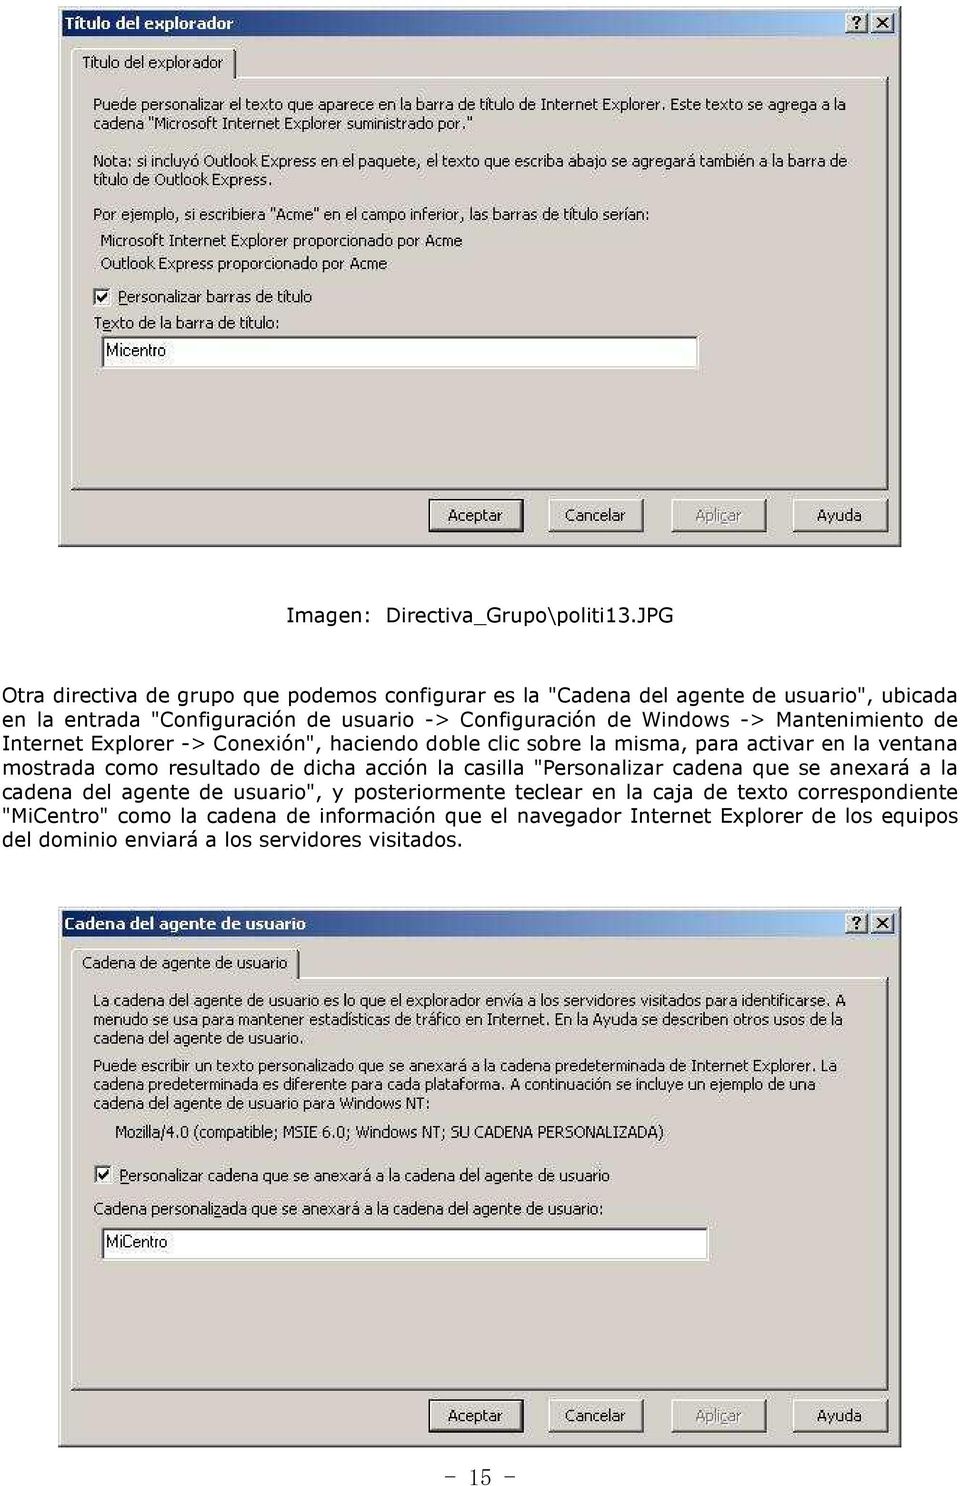 Windows -> Mantenimiento de Internet Explorer -> Conexión", haciendo doble clic sobre la misma, para activar en la ventana mostrada como resultado de dicha